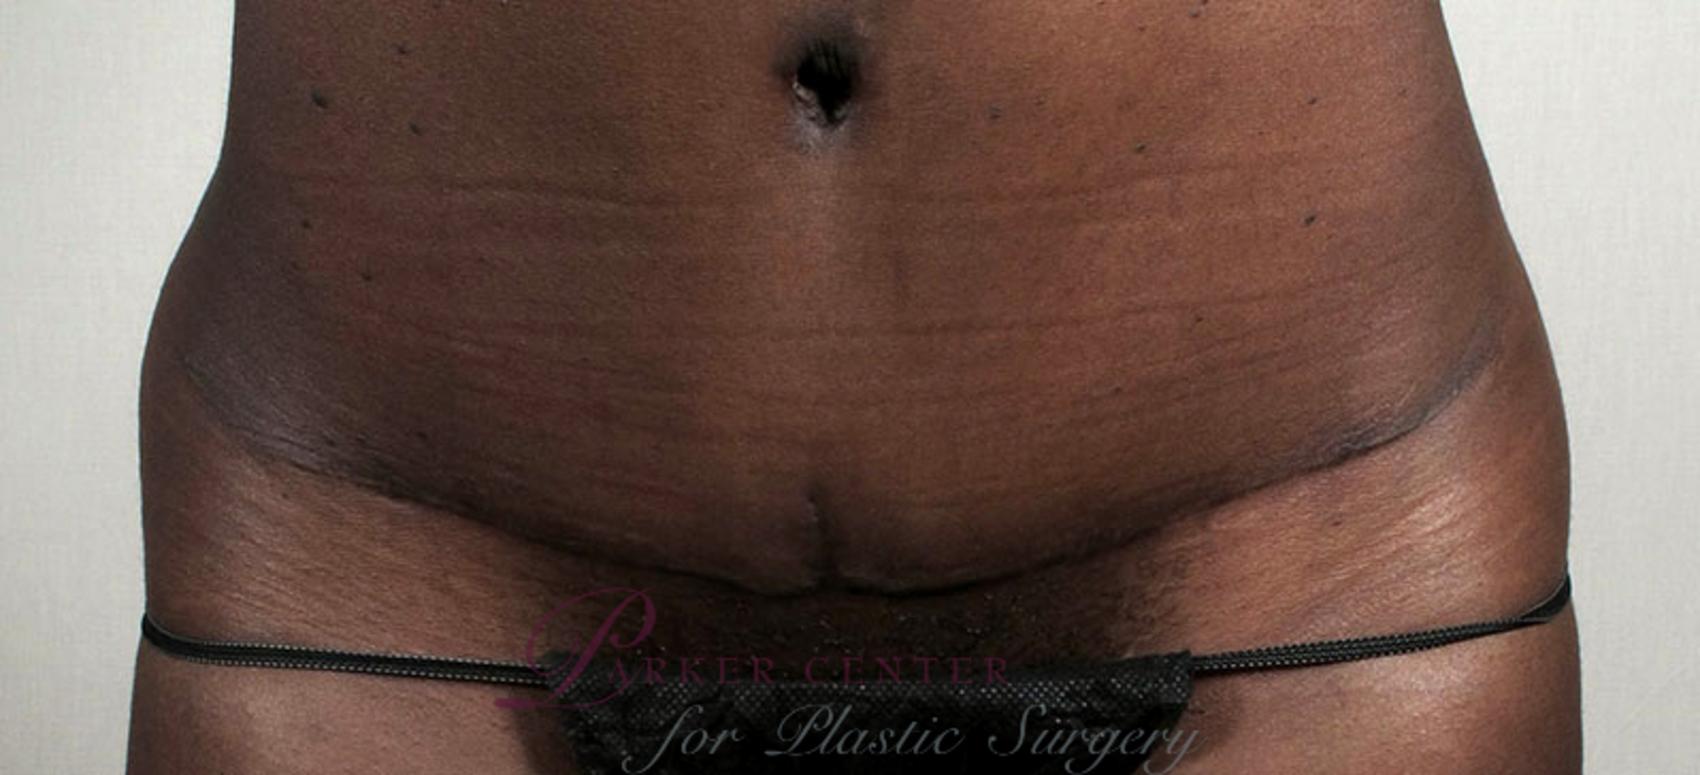 Liposuction Case 735 Before & After View #4 | Paramus, NJ | Parker Center for Plastic Surgery